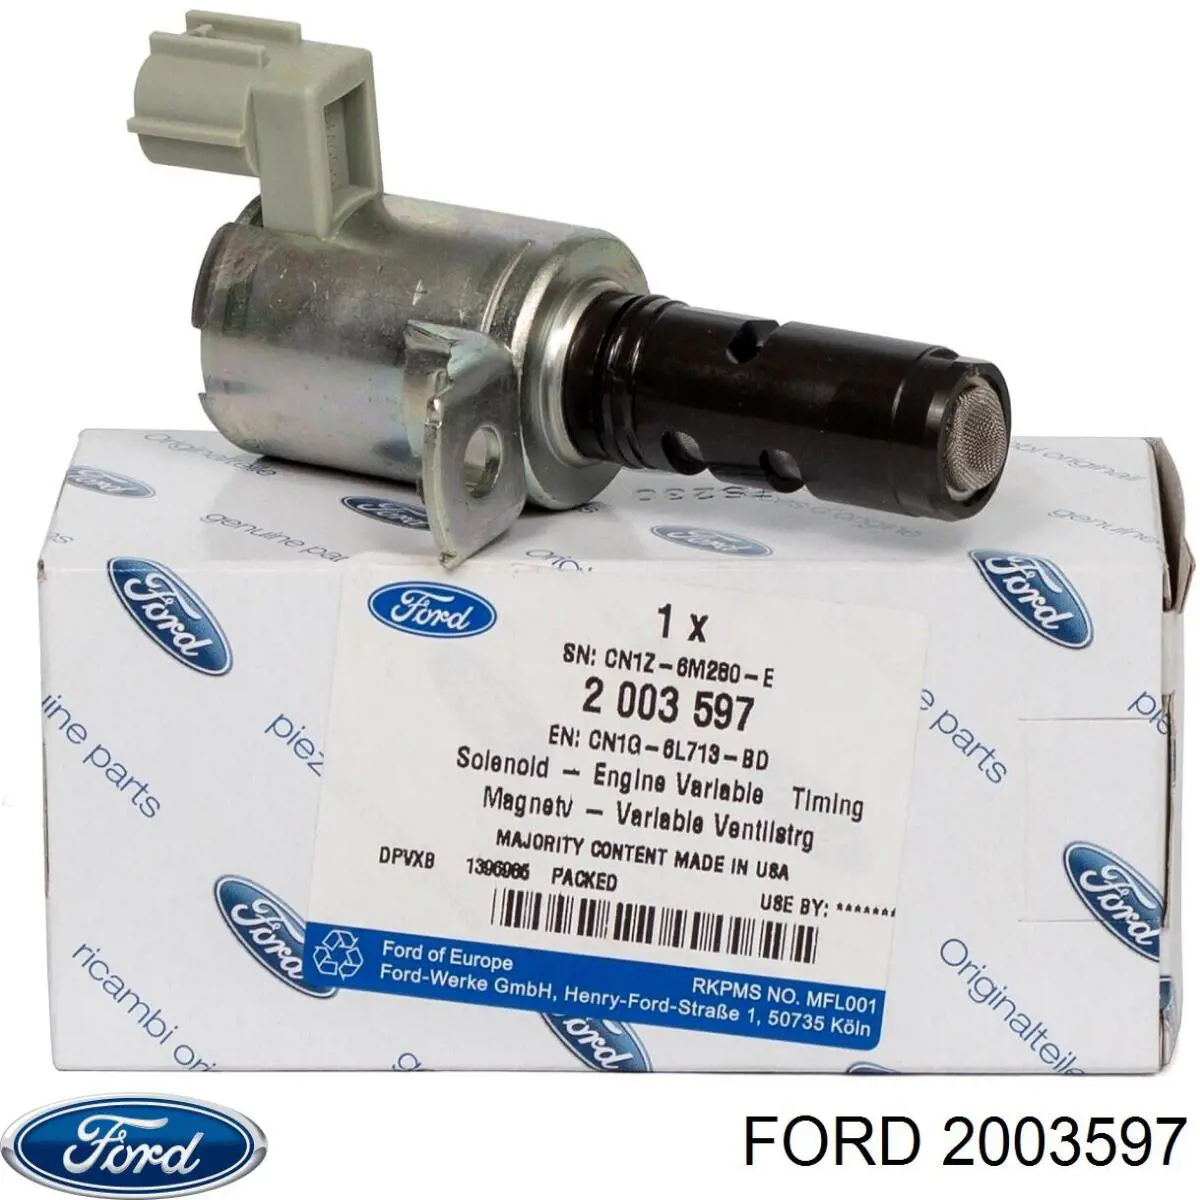 2003597 Ford клапан электромагнитный положения (фаз распредвала)